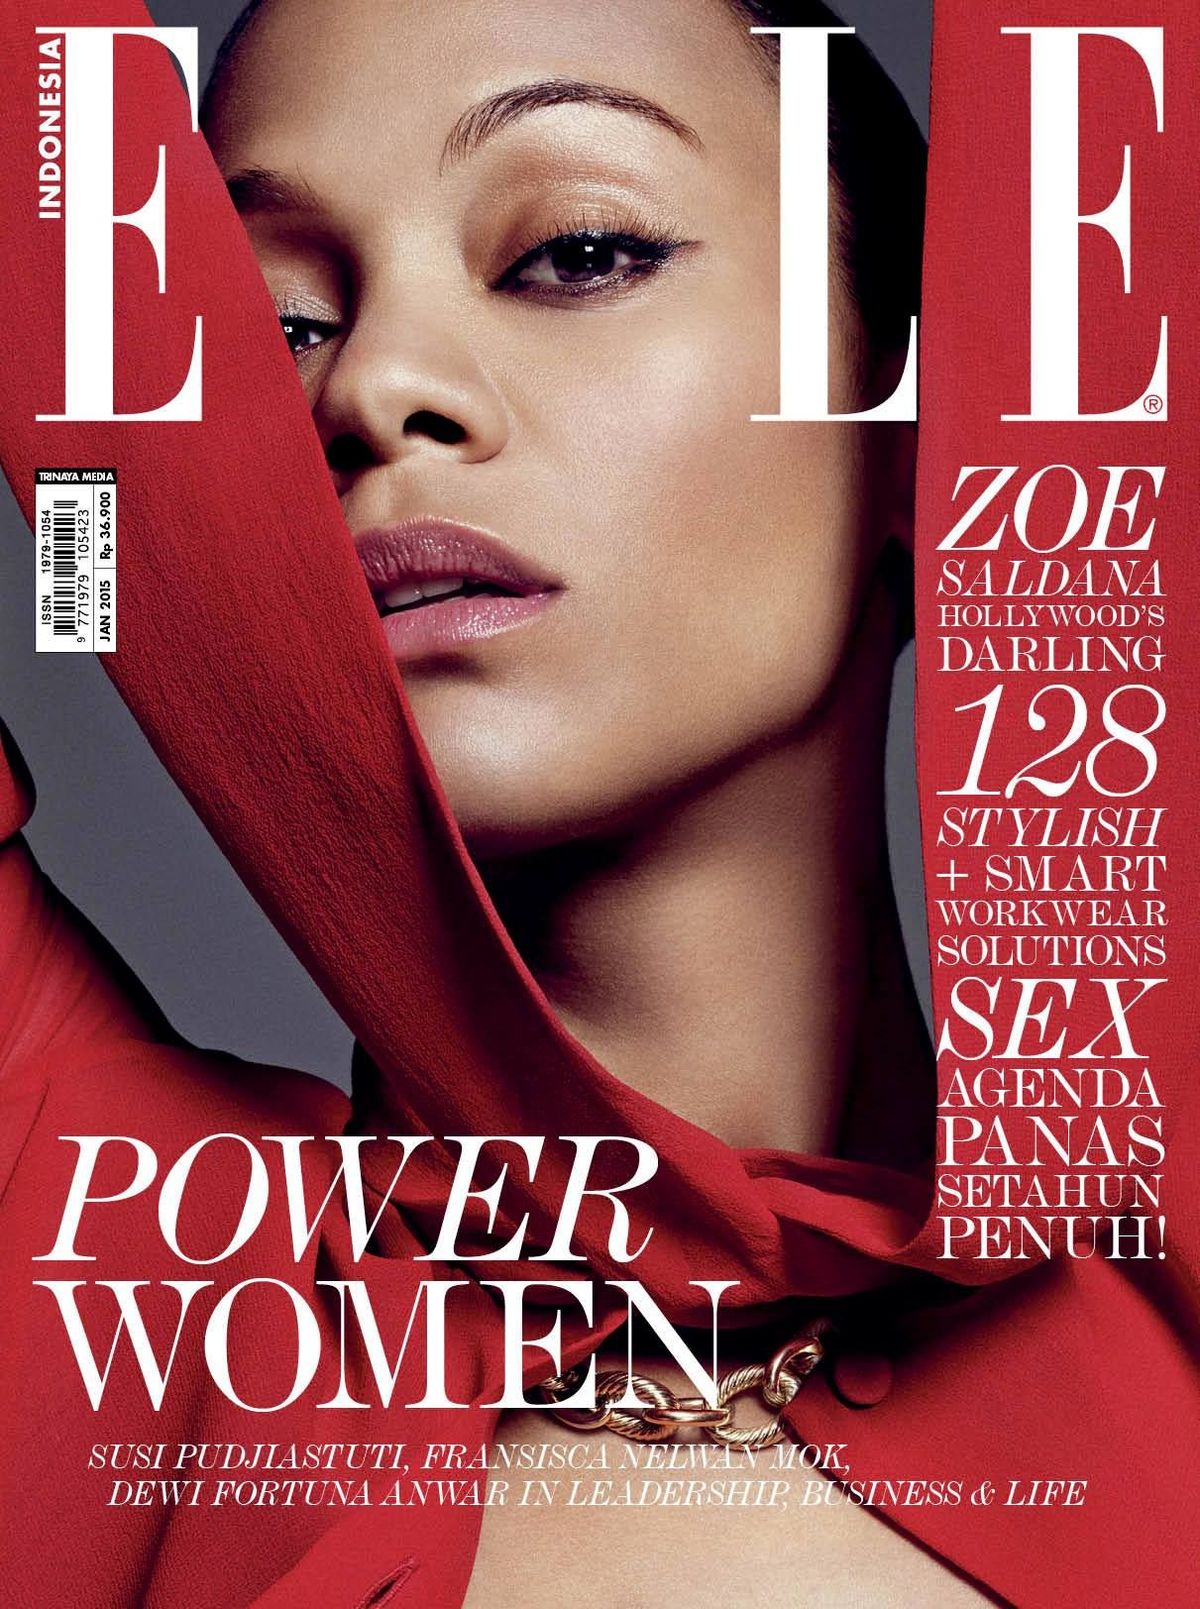 Зои Салдана на обложке журнала Elle Indonesia